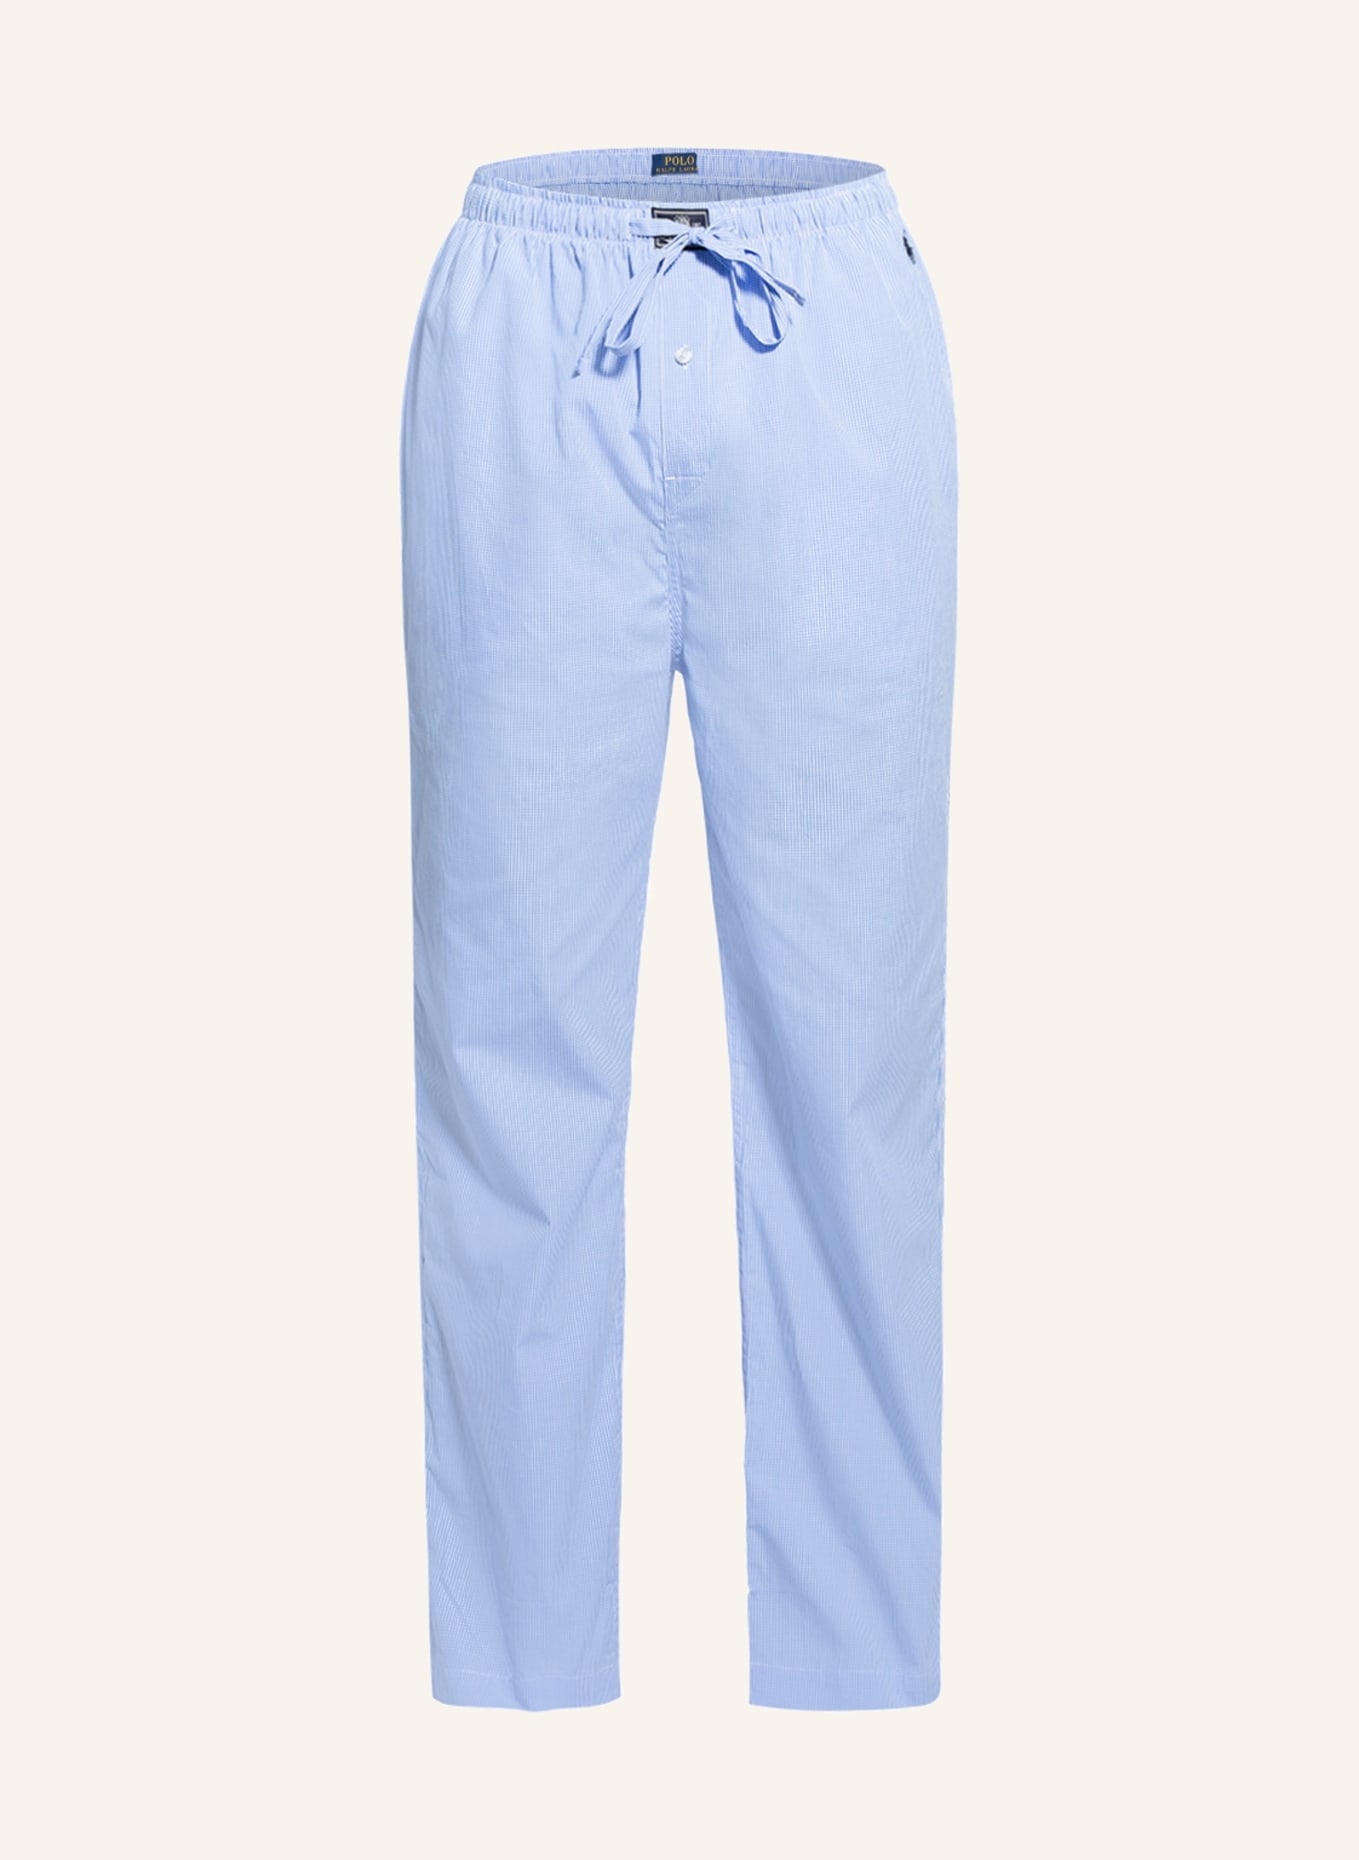 POLO RALPH LAUREN Pajama pants, Color: LIGHT BLUE/ BLUE (Image 1)